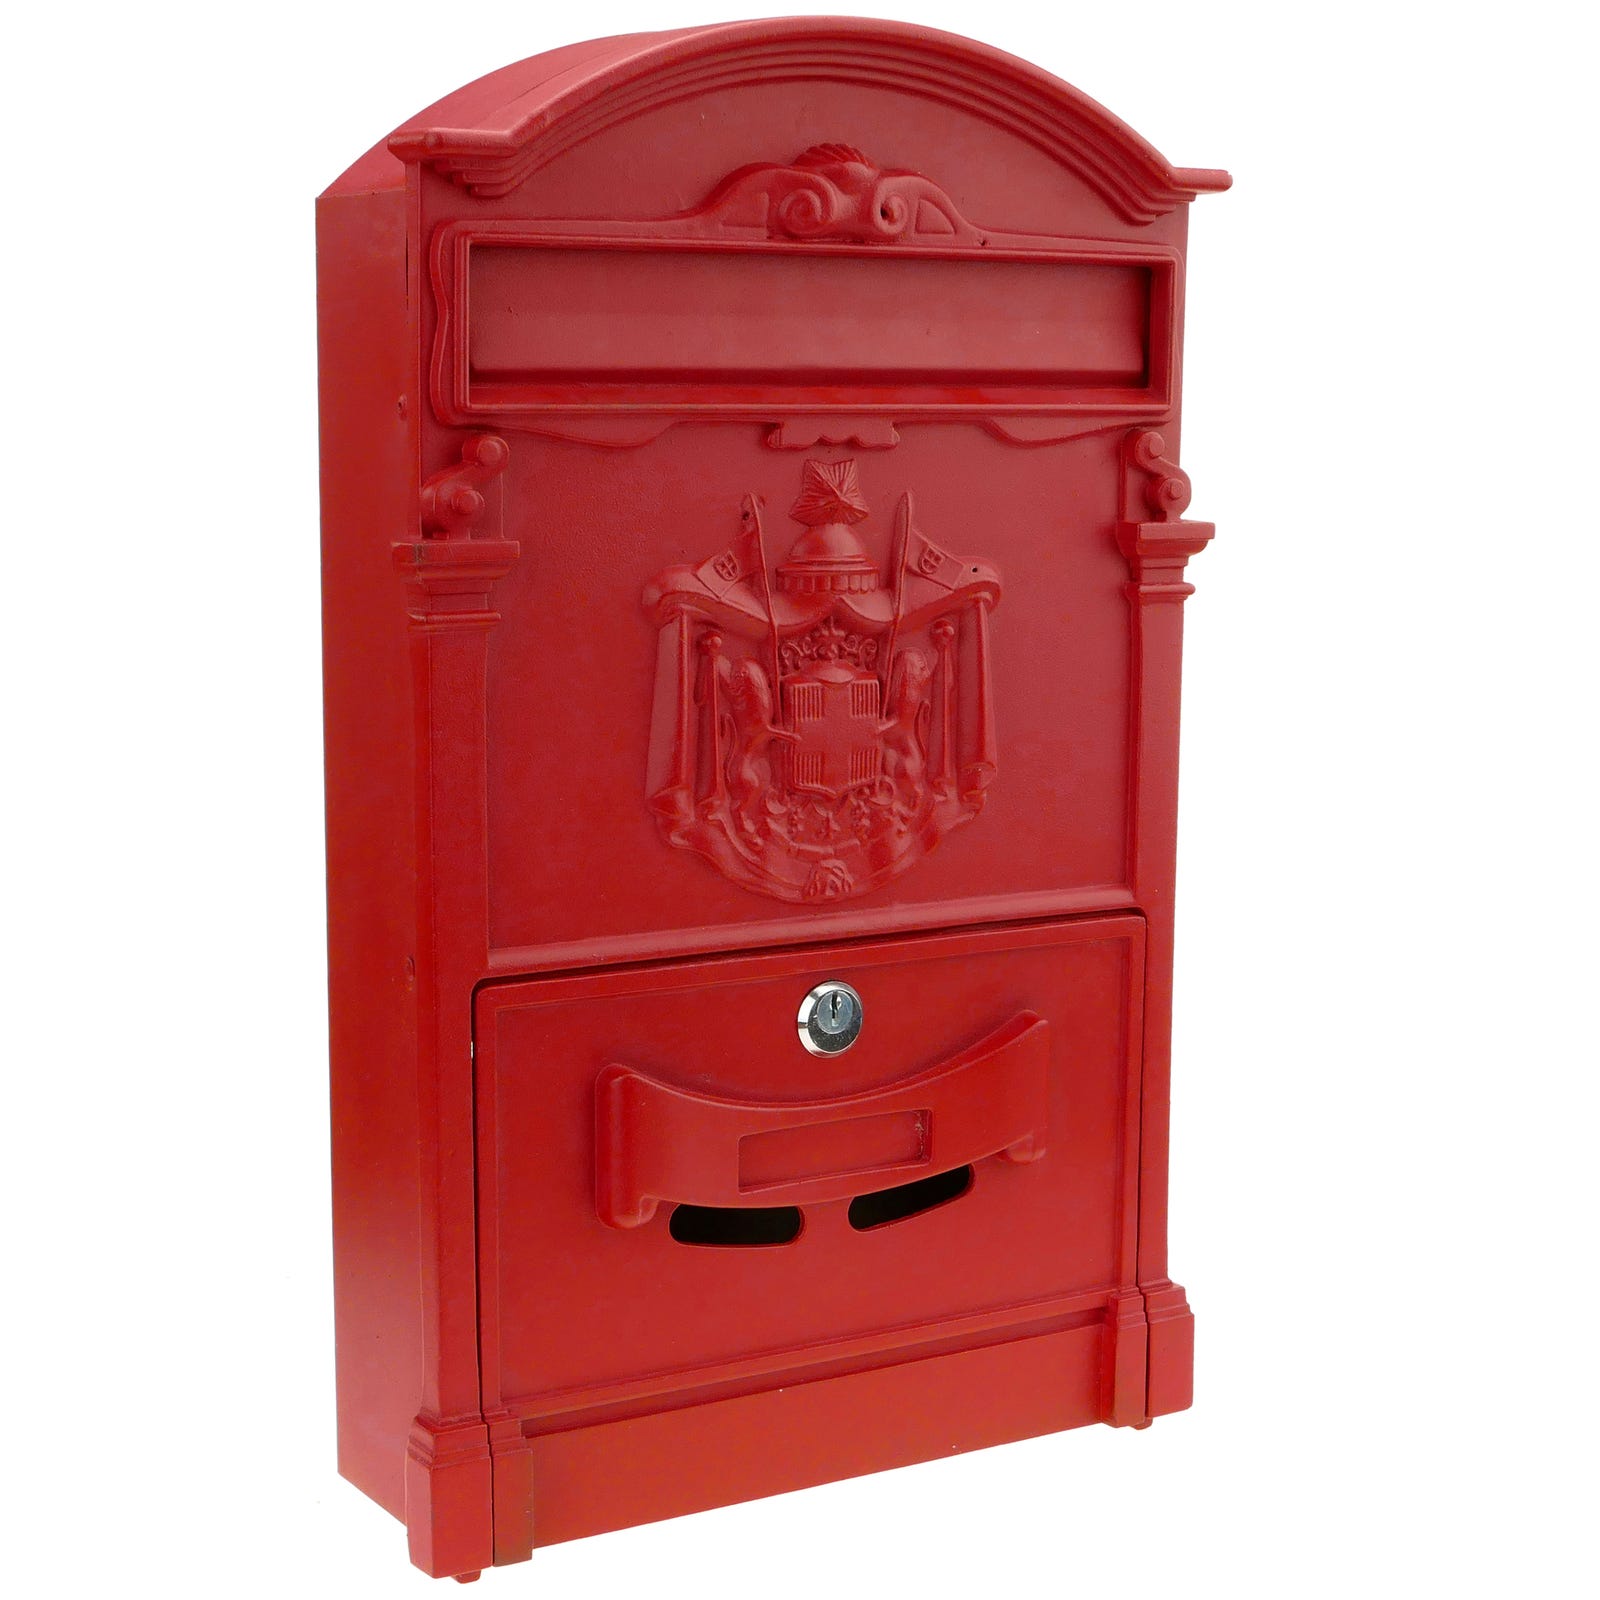 Cassetta delle lettere casella postale per lettera e posta antico metallico  di colore rosso parete